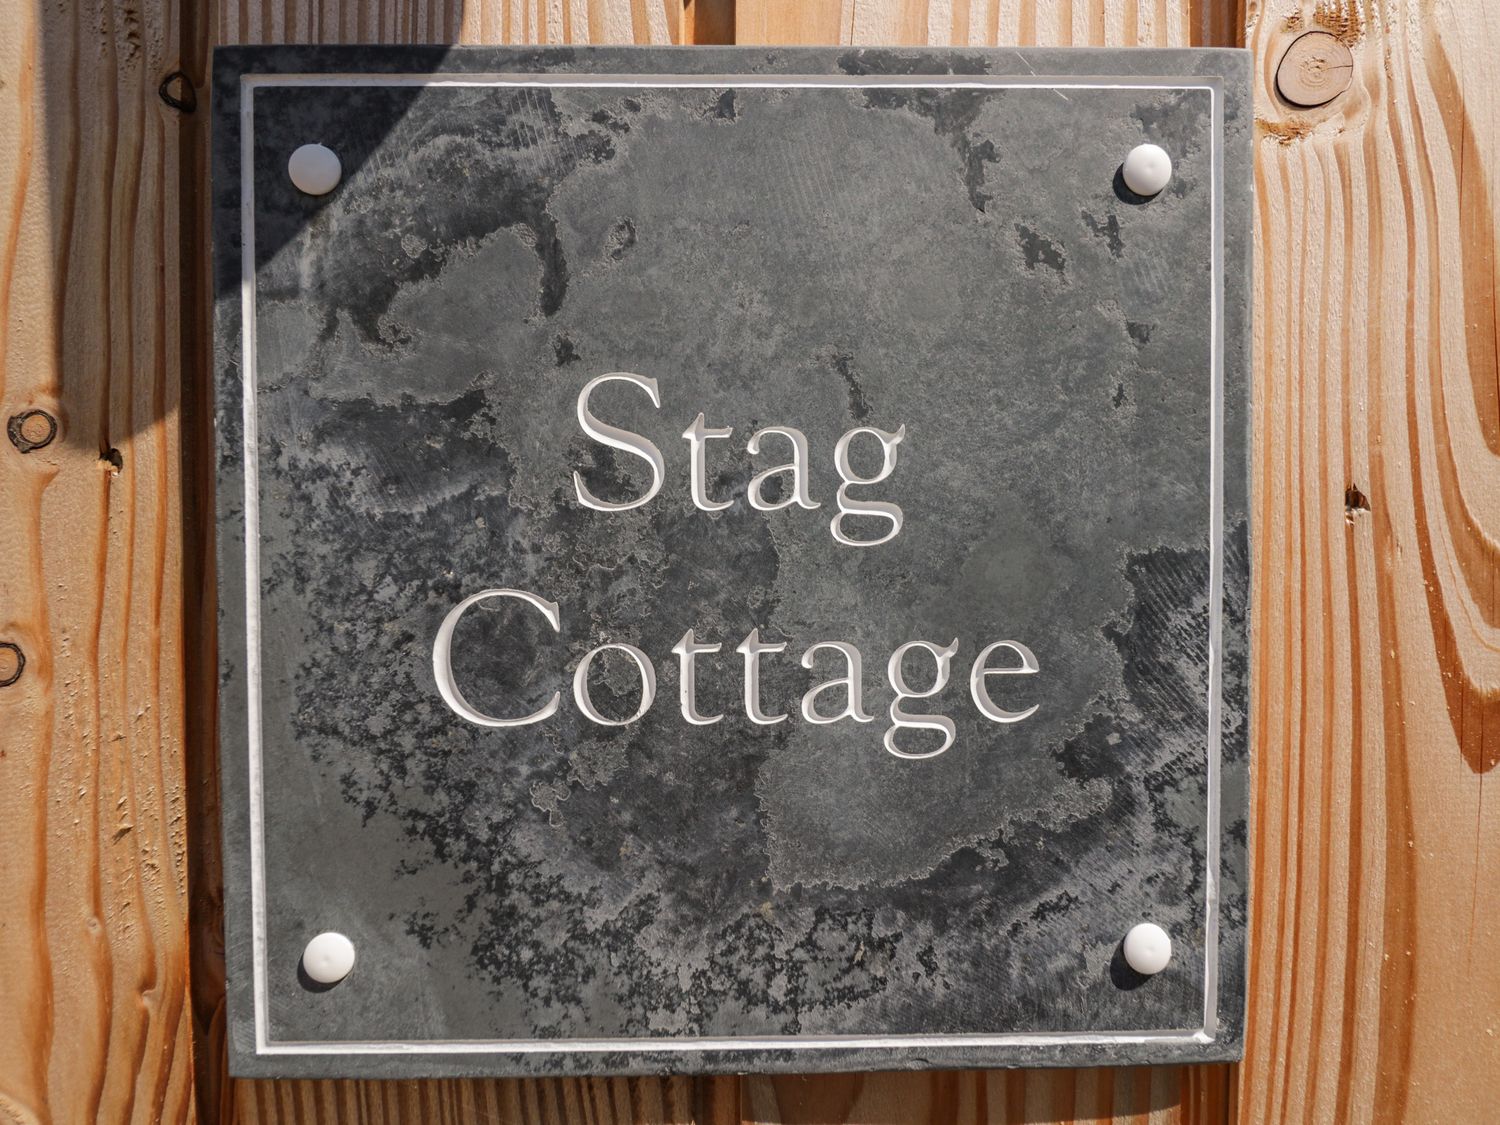 Stag Cottage, Lytchett Matravers 